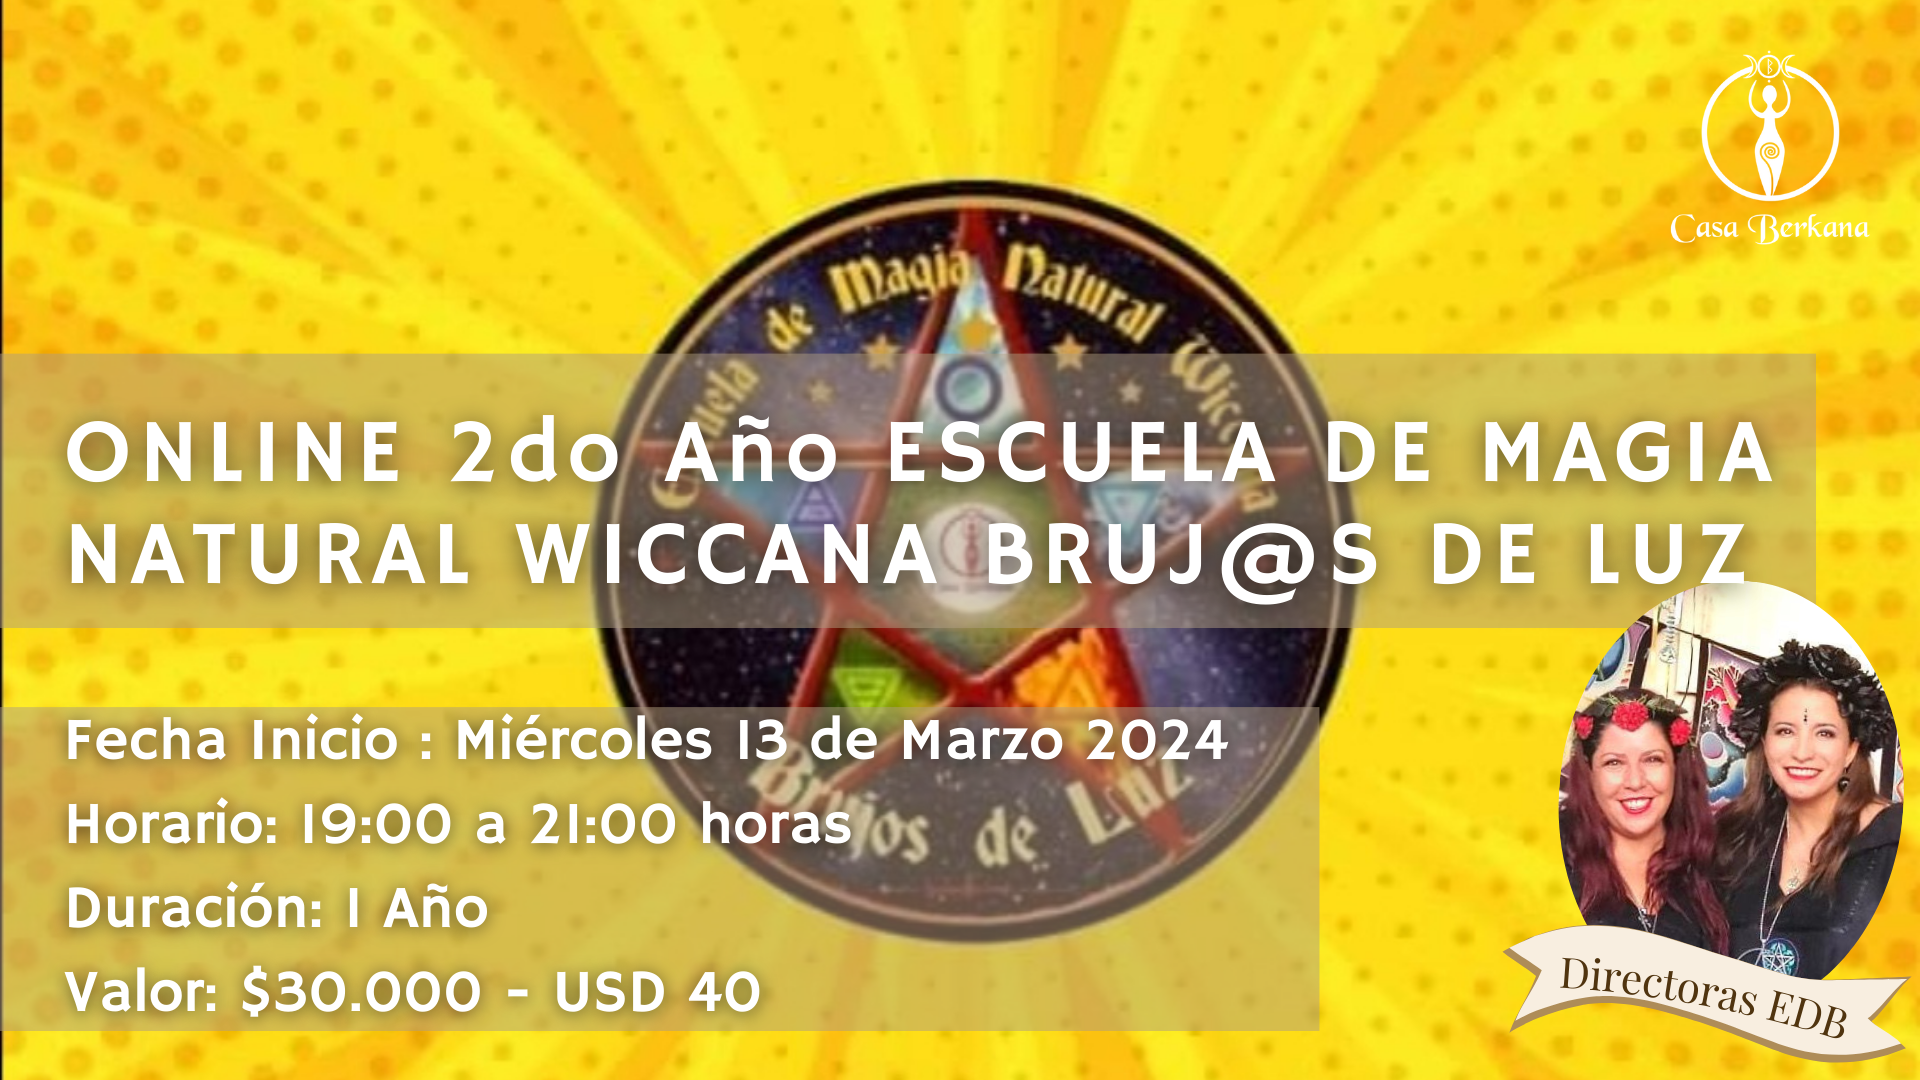 Online 2do Año Escuela de Magia Natural Wiccana Bruj@s de Luz